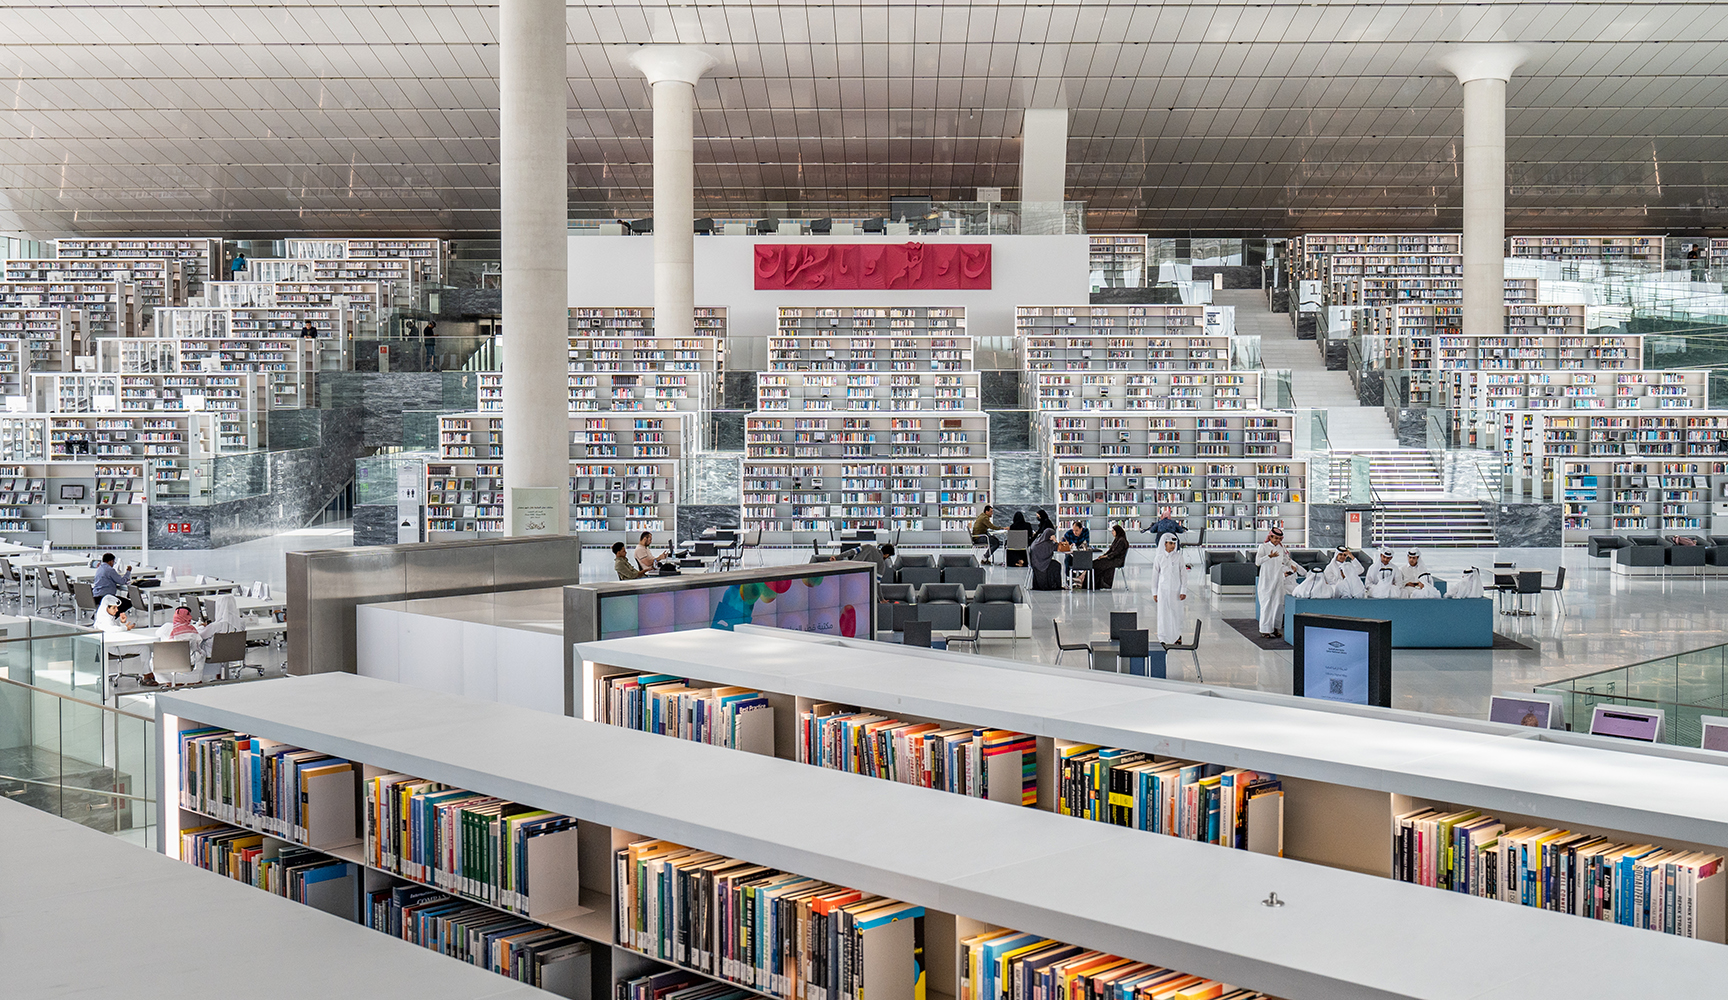 يتوفر بالمكتبة اكثر من مليون كتاب بين الروايات وكتب اللغة والعلوم والطب والمؤلفات والتكنولوجيا والفنون